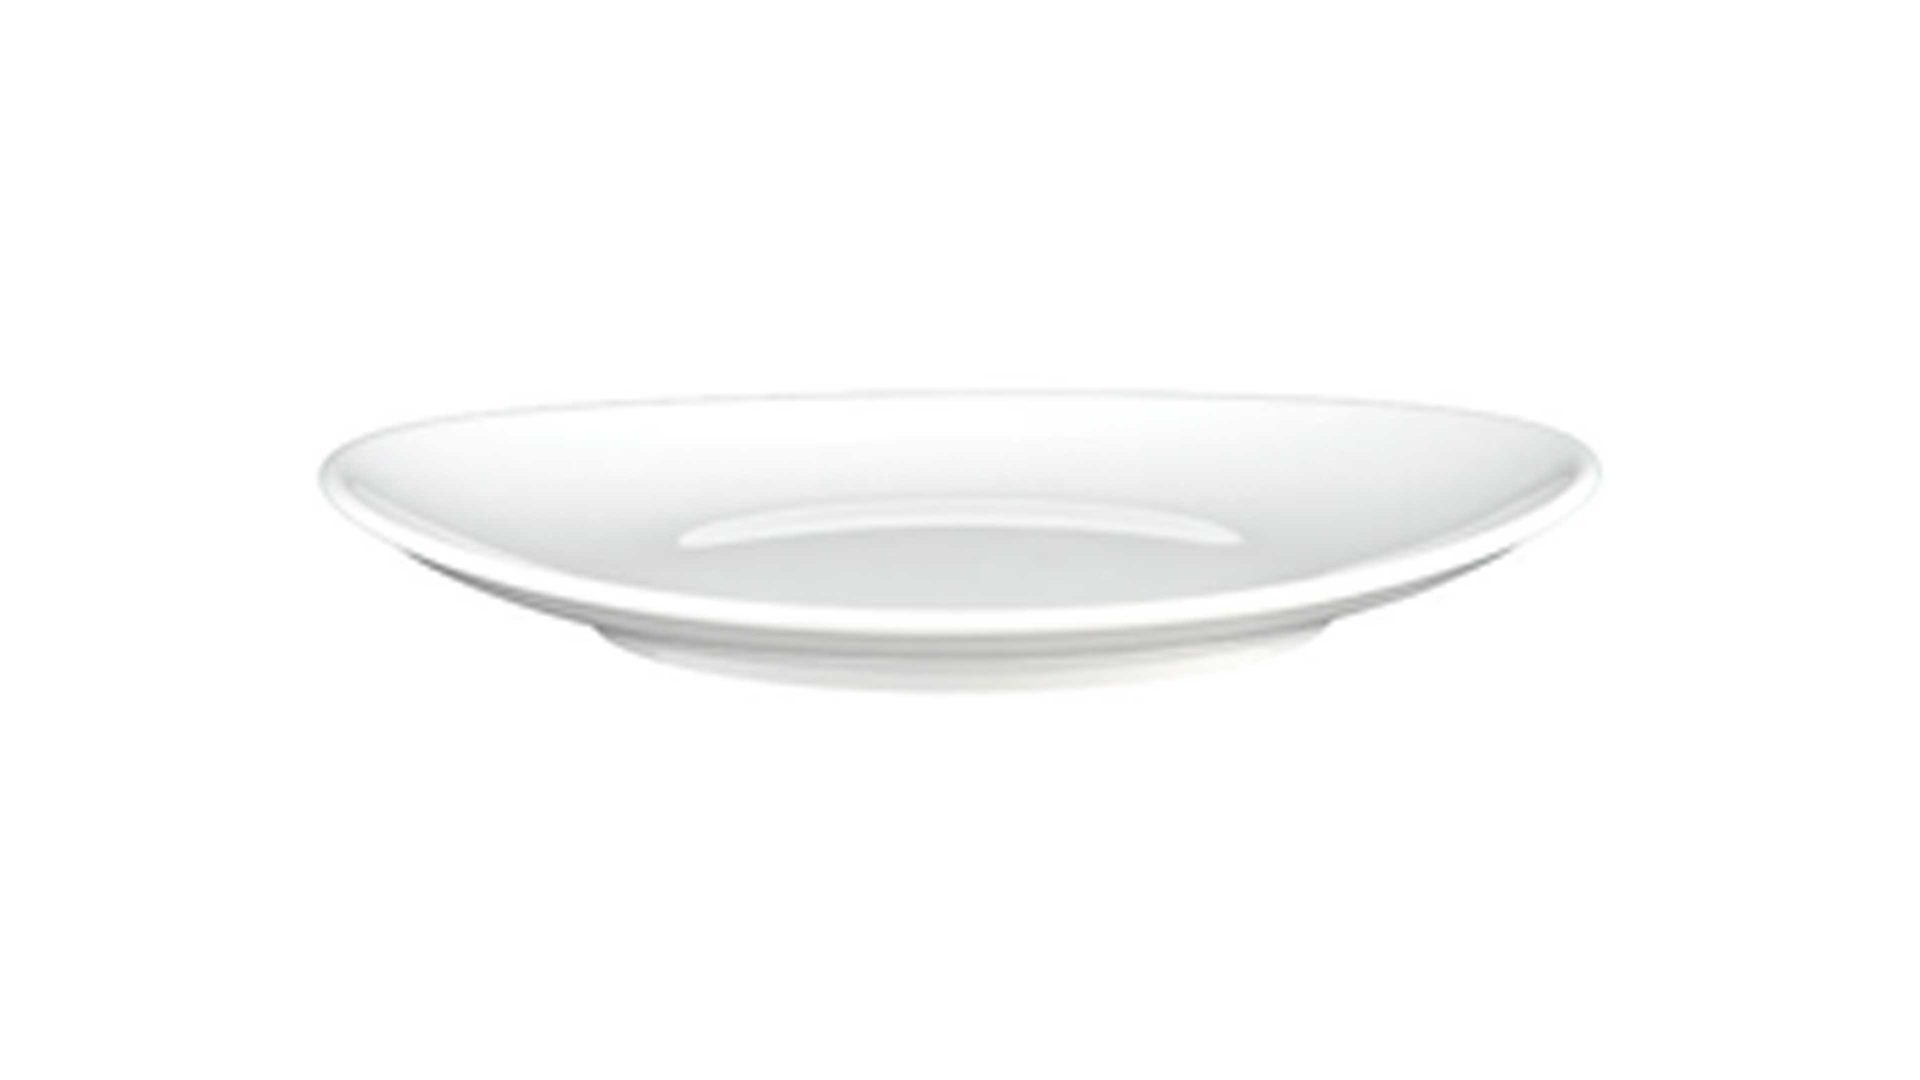 Essteller Seltmann aus Porzellan in Weiß Seltmann Porzellanserie Modern Life 6 – Speiseteller weißes Porzellan – Durchmesser ca. 27 cm